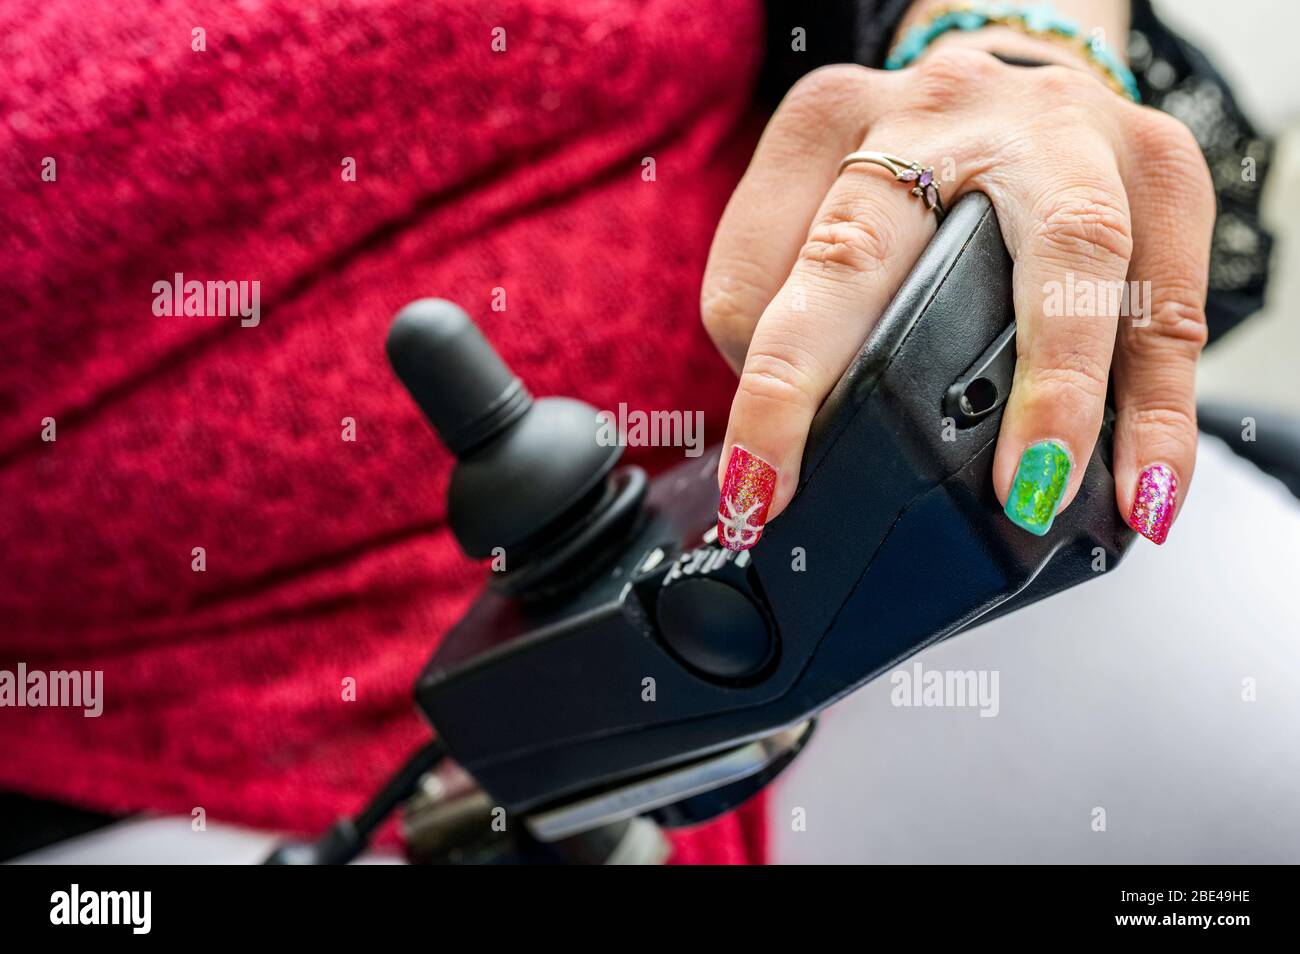 Femme maorie avec paralysie cérébrale en fauteuil roulant électrique avec joystick et contrôleurs, ongles montrant l'art des ongles; Wellington, Nouvelle-Zélande Banque D'Images